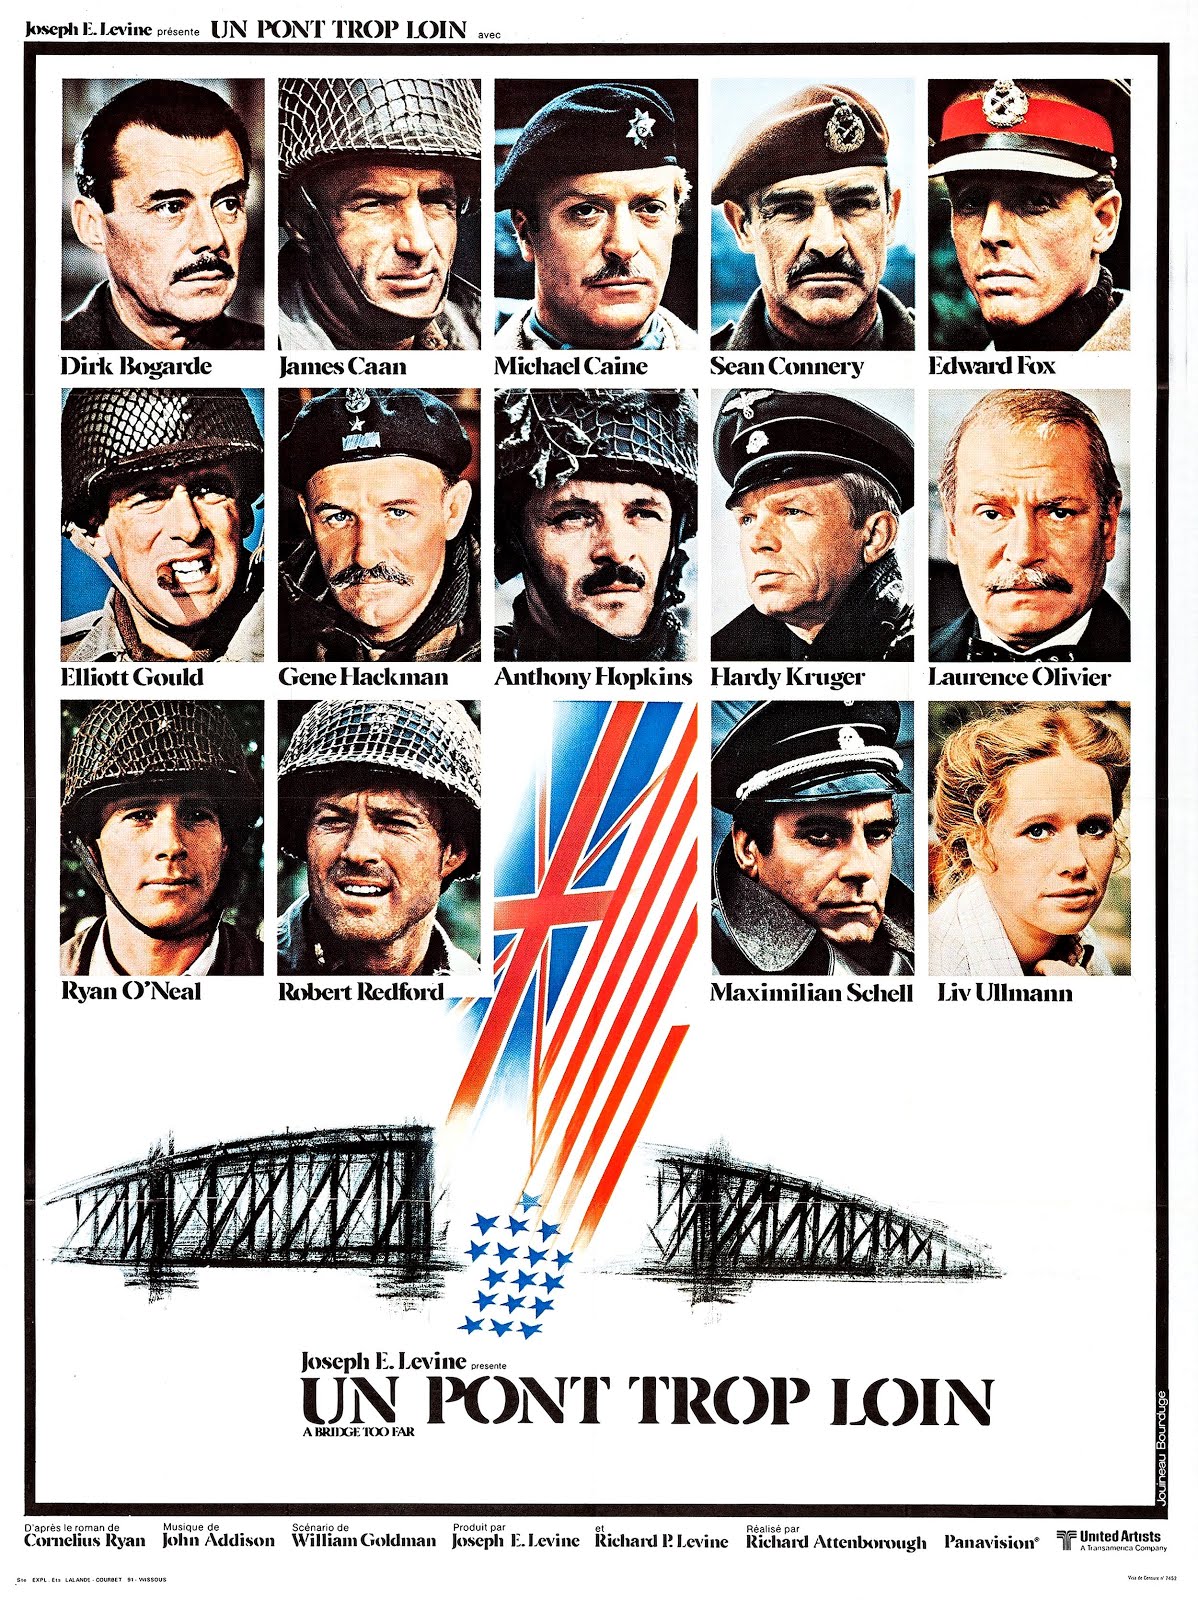 Un pont trop loin (1976) Richard Attenborough - A bridge too far (26.04.1976 / 10.1976)